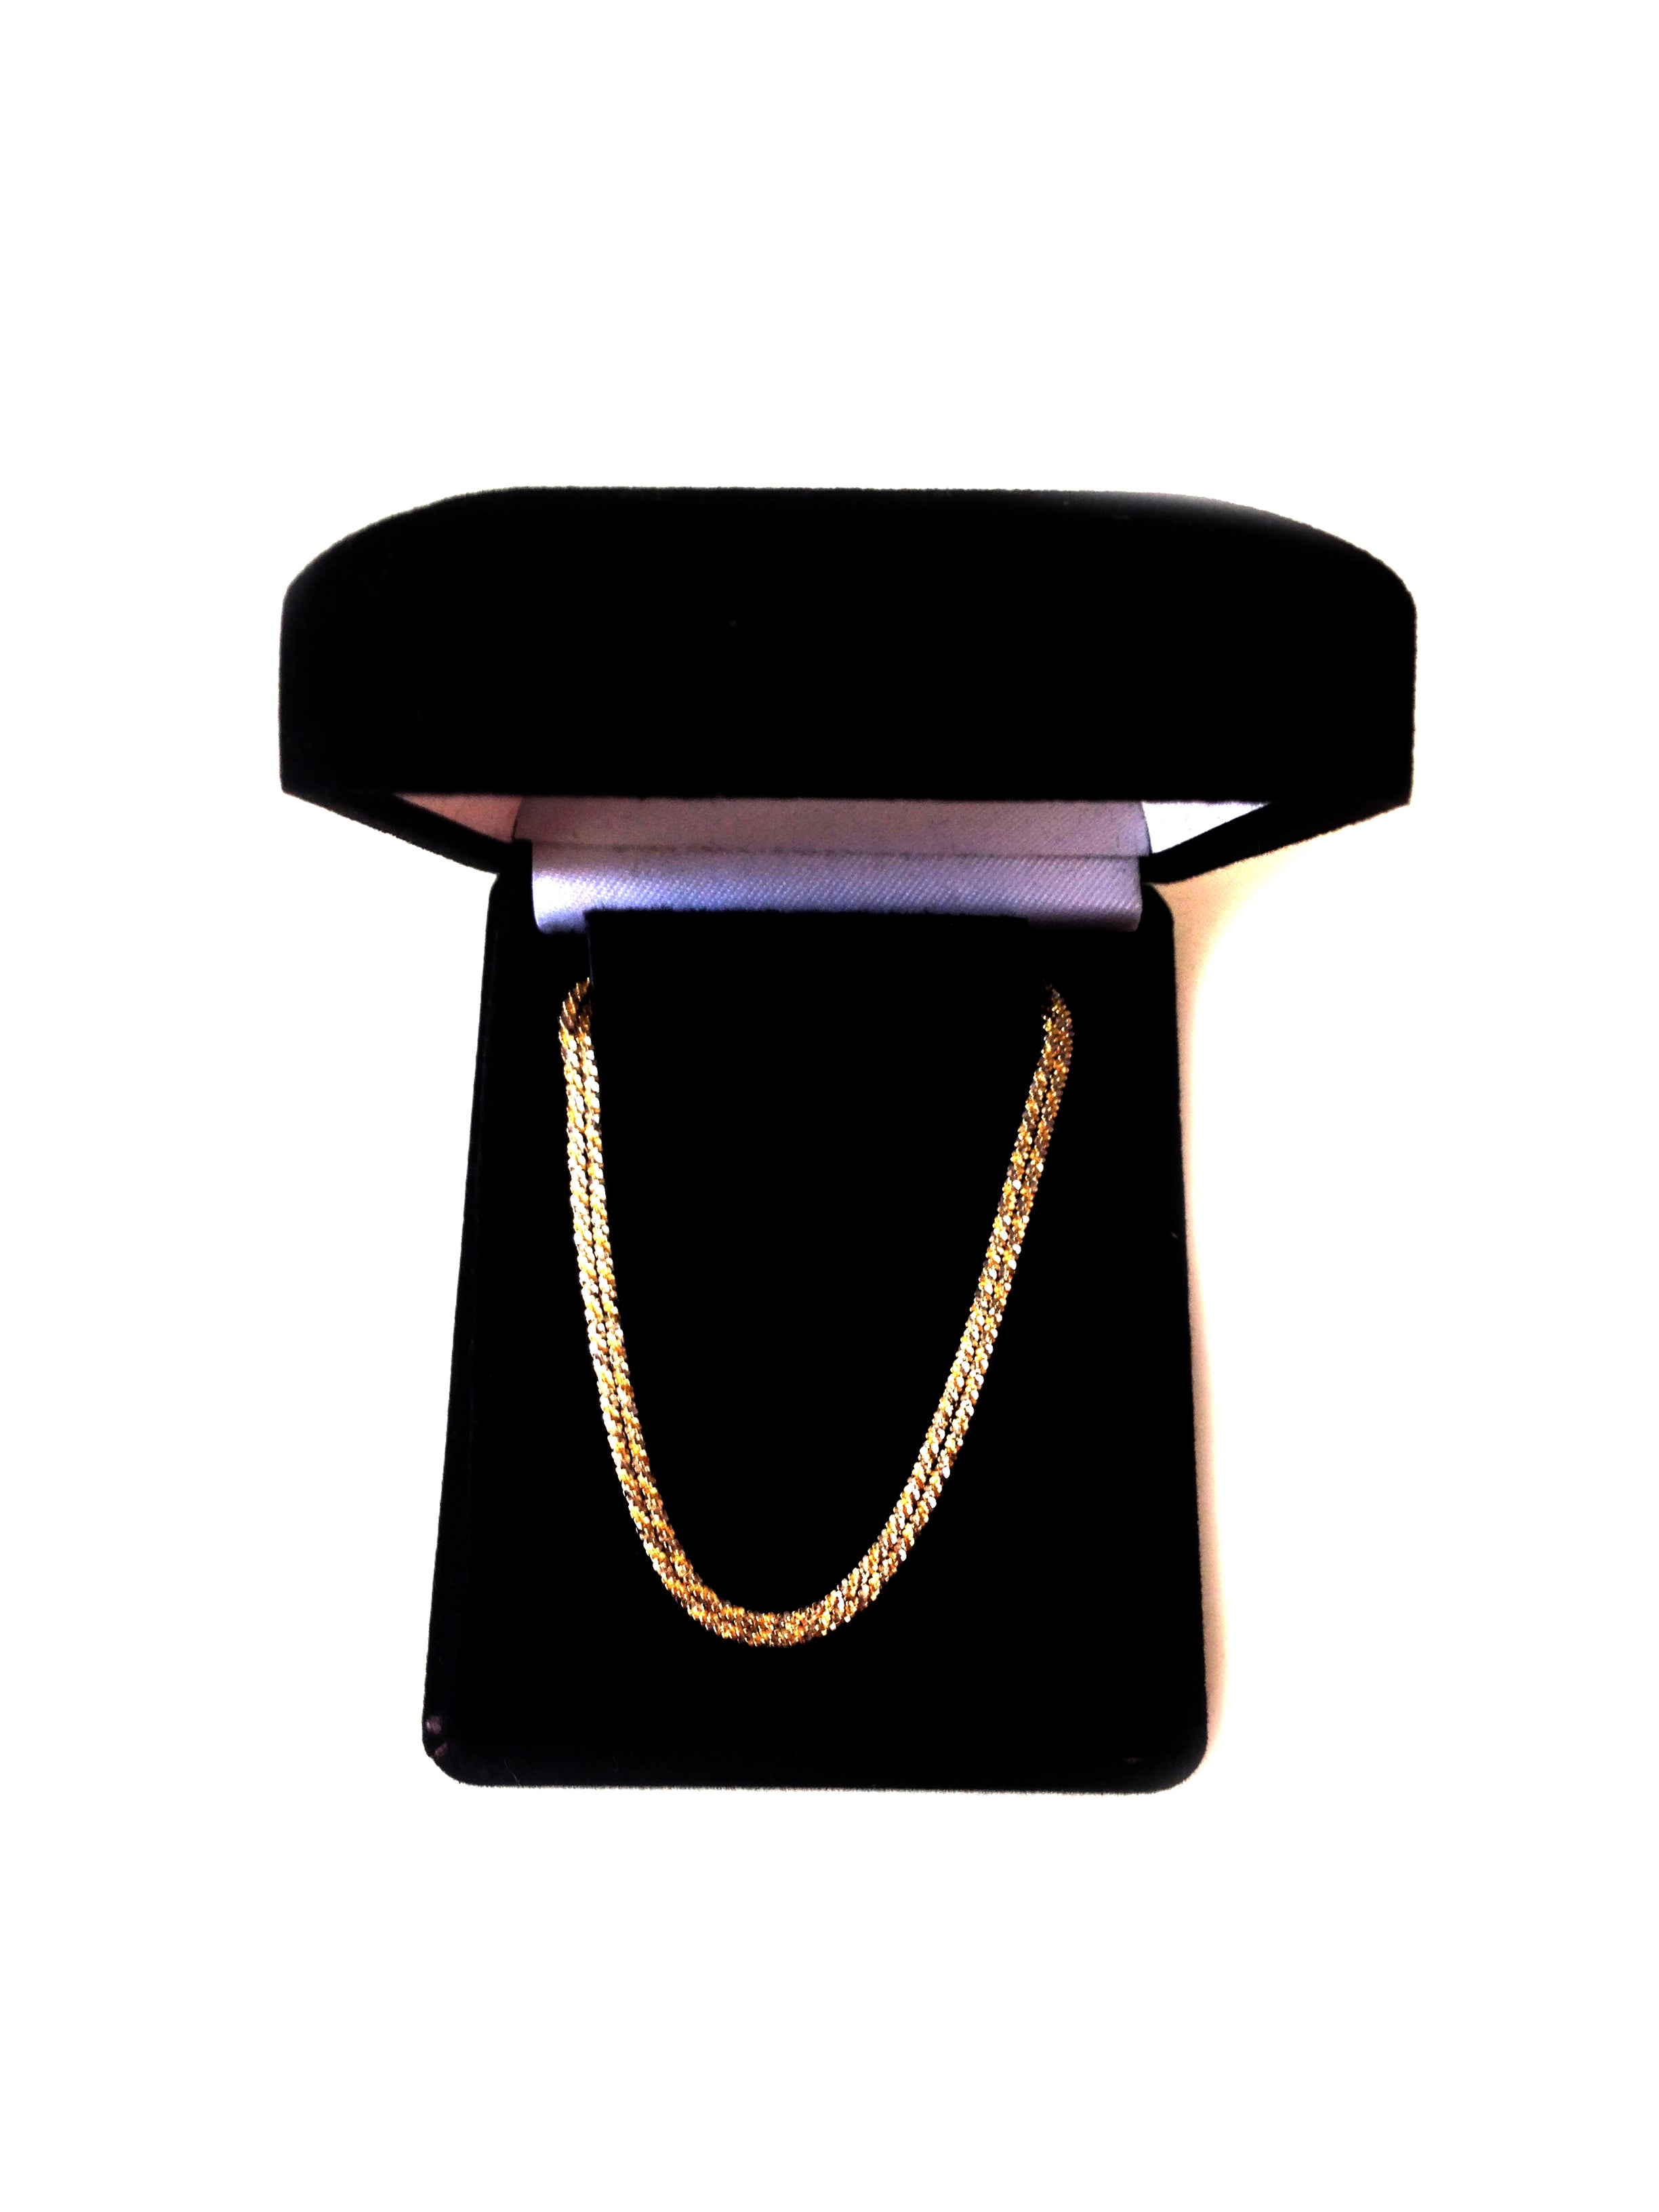 14k 2 Tone gult och vitt guld Sparkle Chain halsband, 1,5 mm fina designersmycken för män och kvinnor